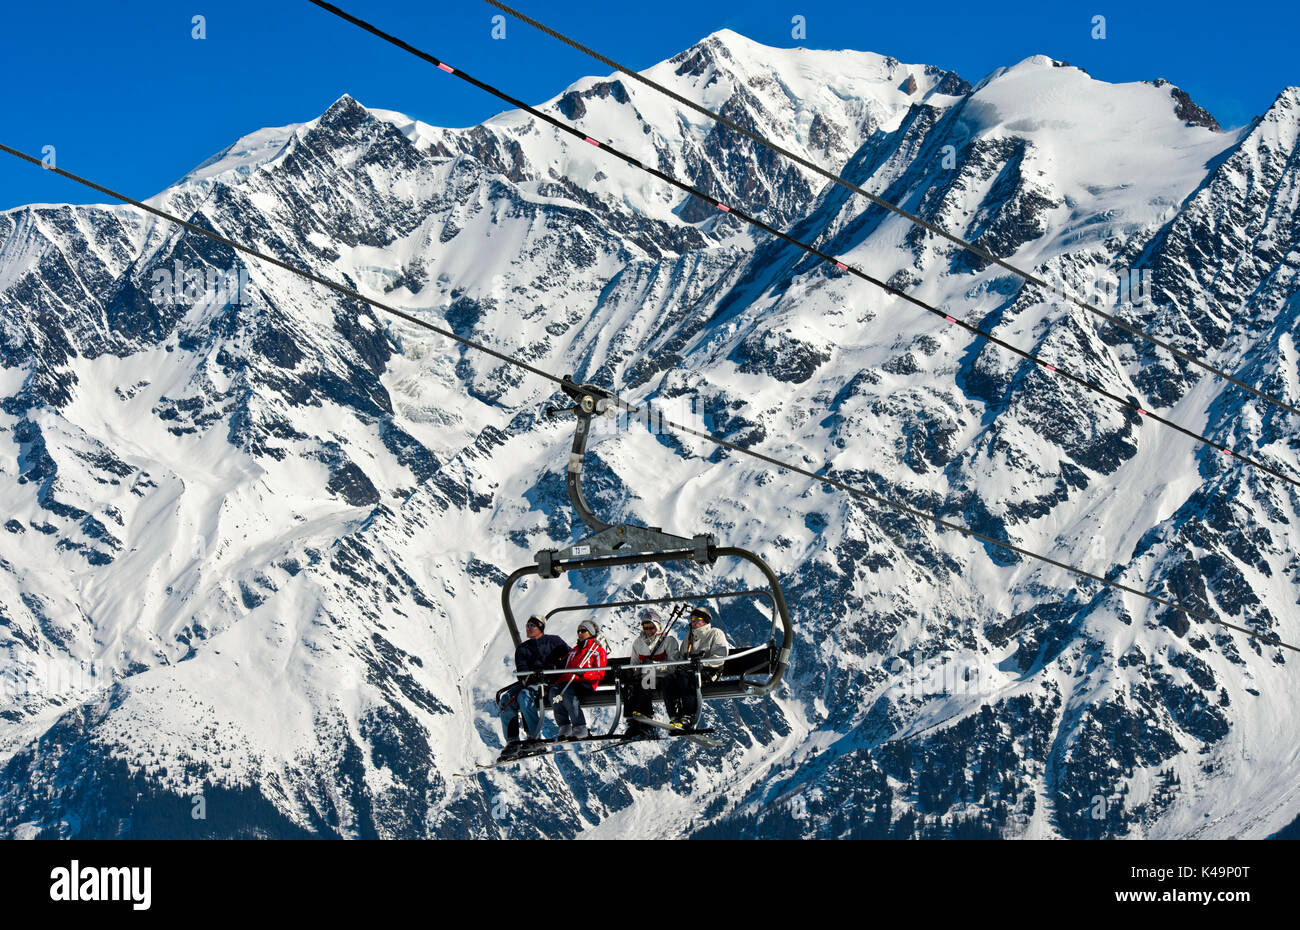 Skieurs sur un télésiège dans la station de ski Les Contamines Montjoie, Massif du Mont Blanc, France Banque D'Images